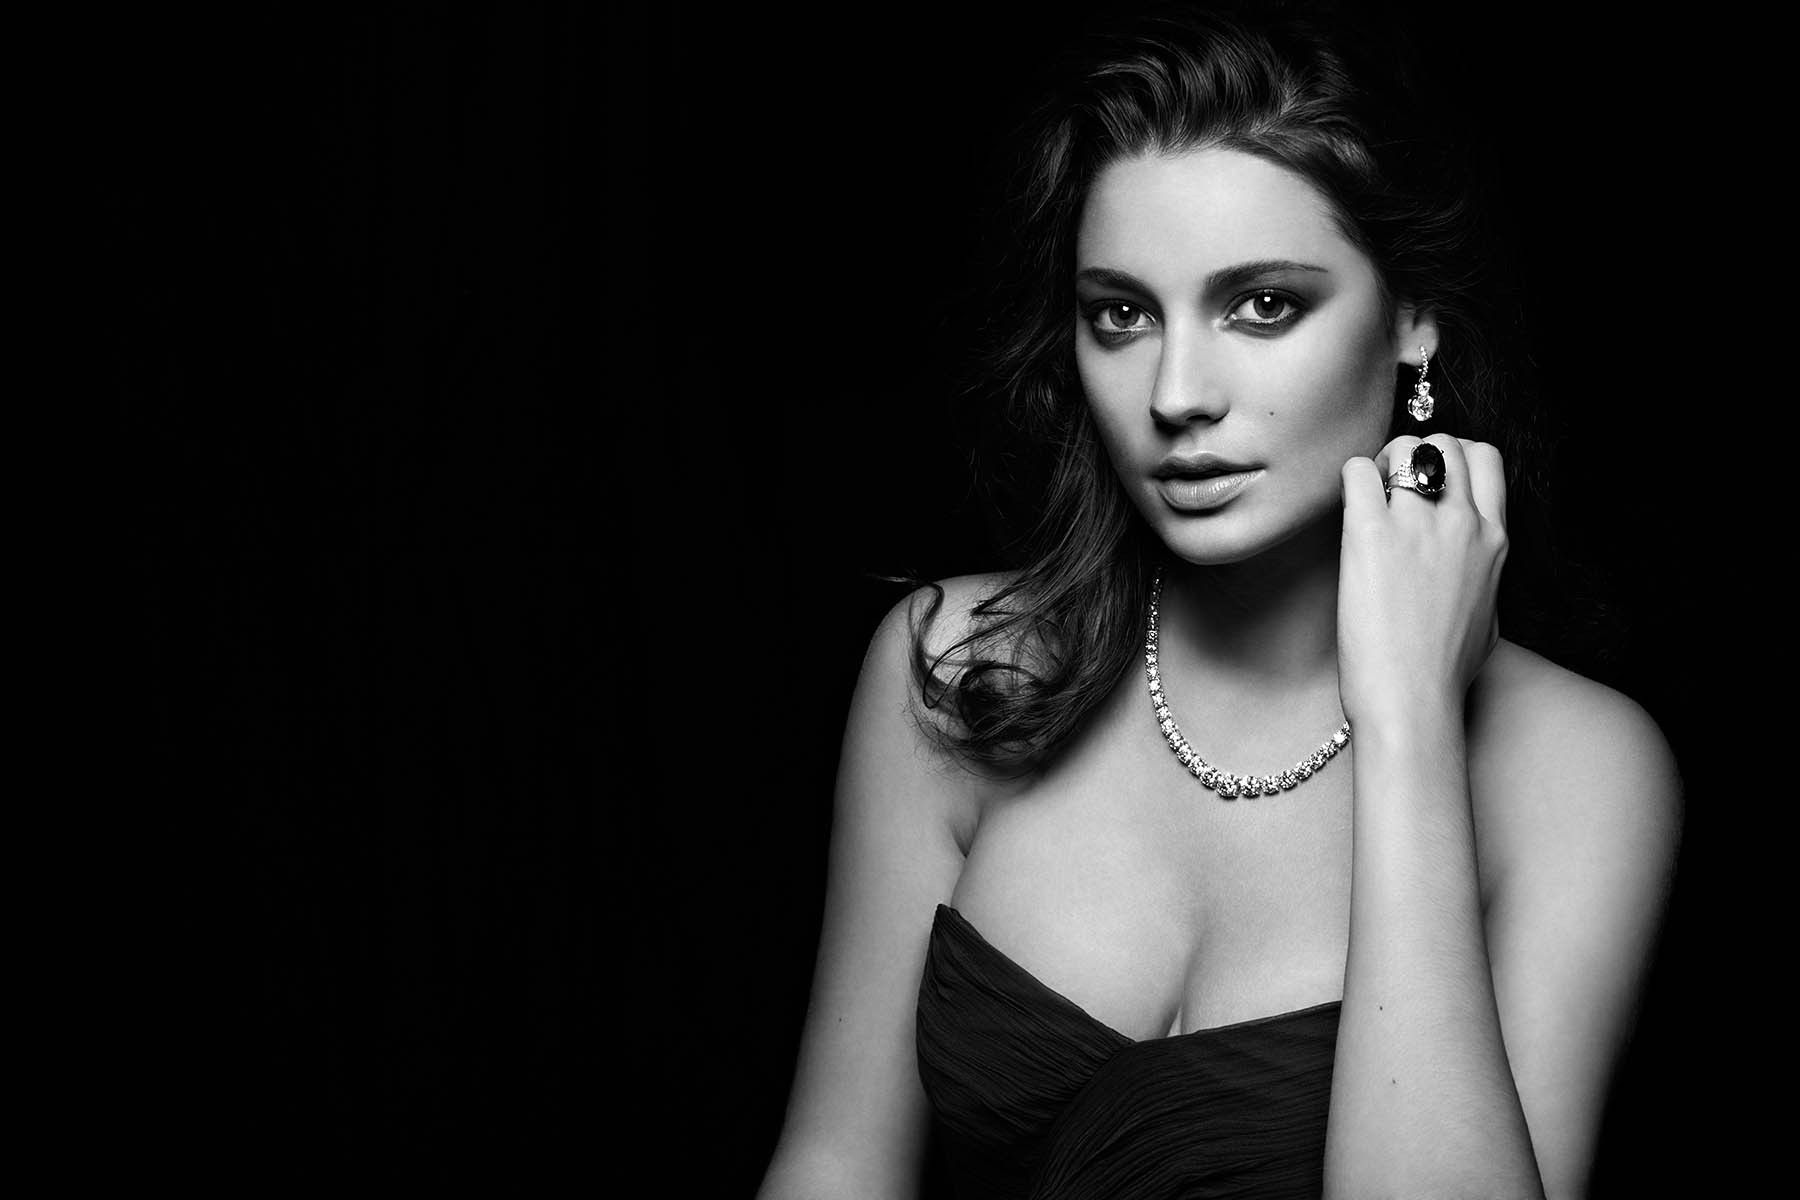 Model: Chloe LaslierClient: Diamonds International